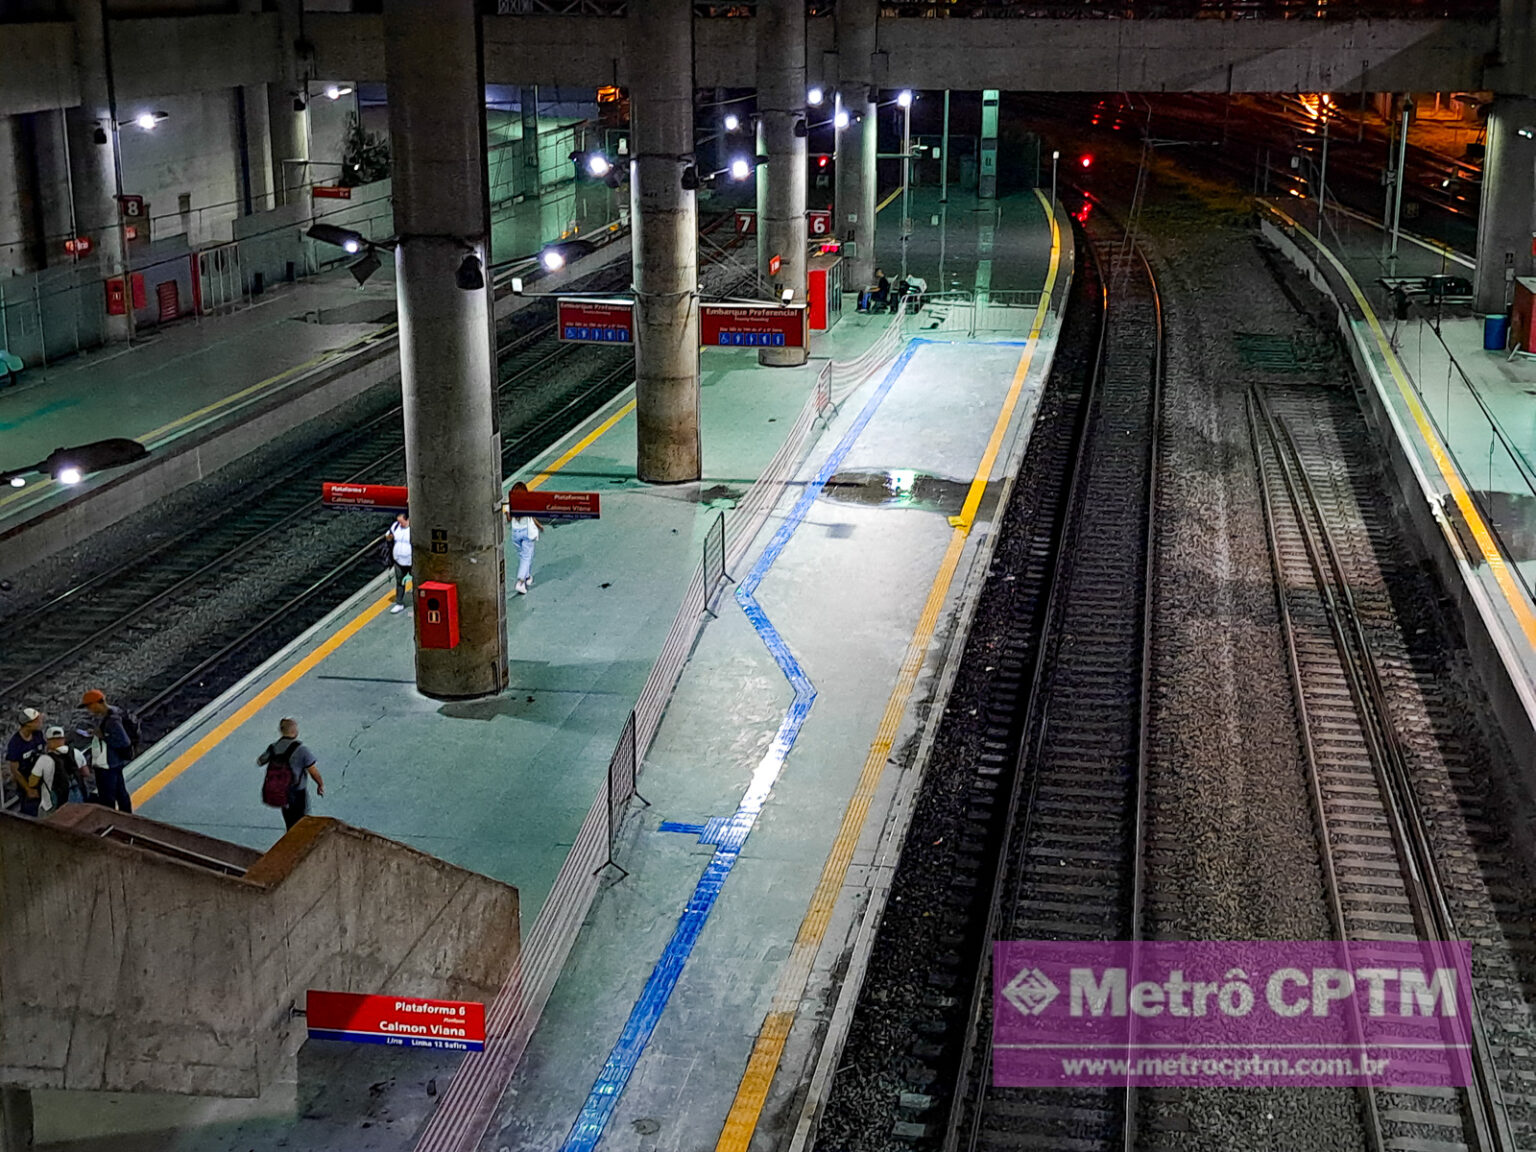 How to get to Estação Brás (CPTM) by Bus, Metro or Train?